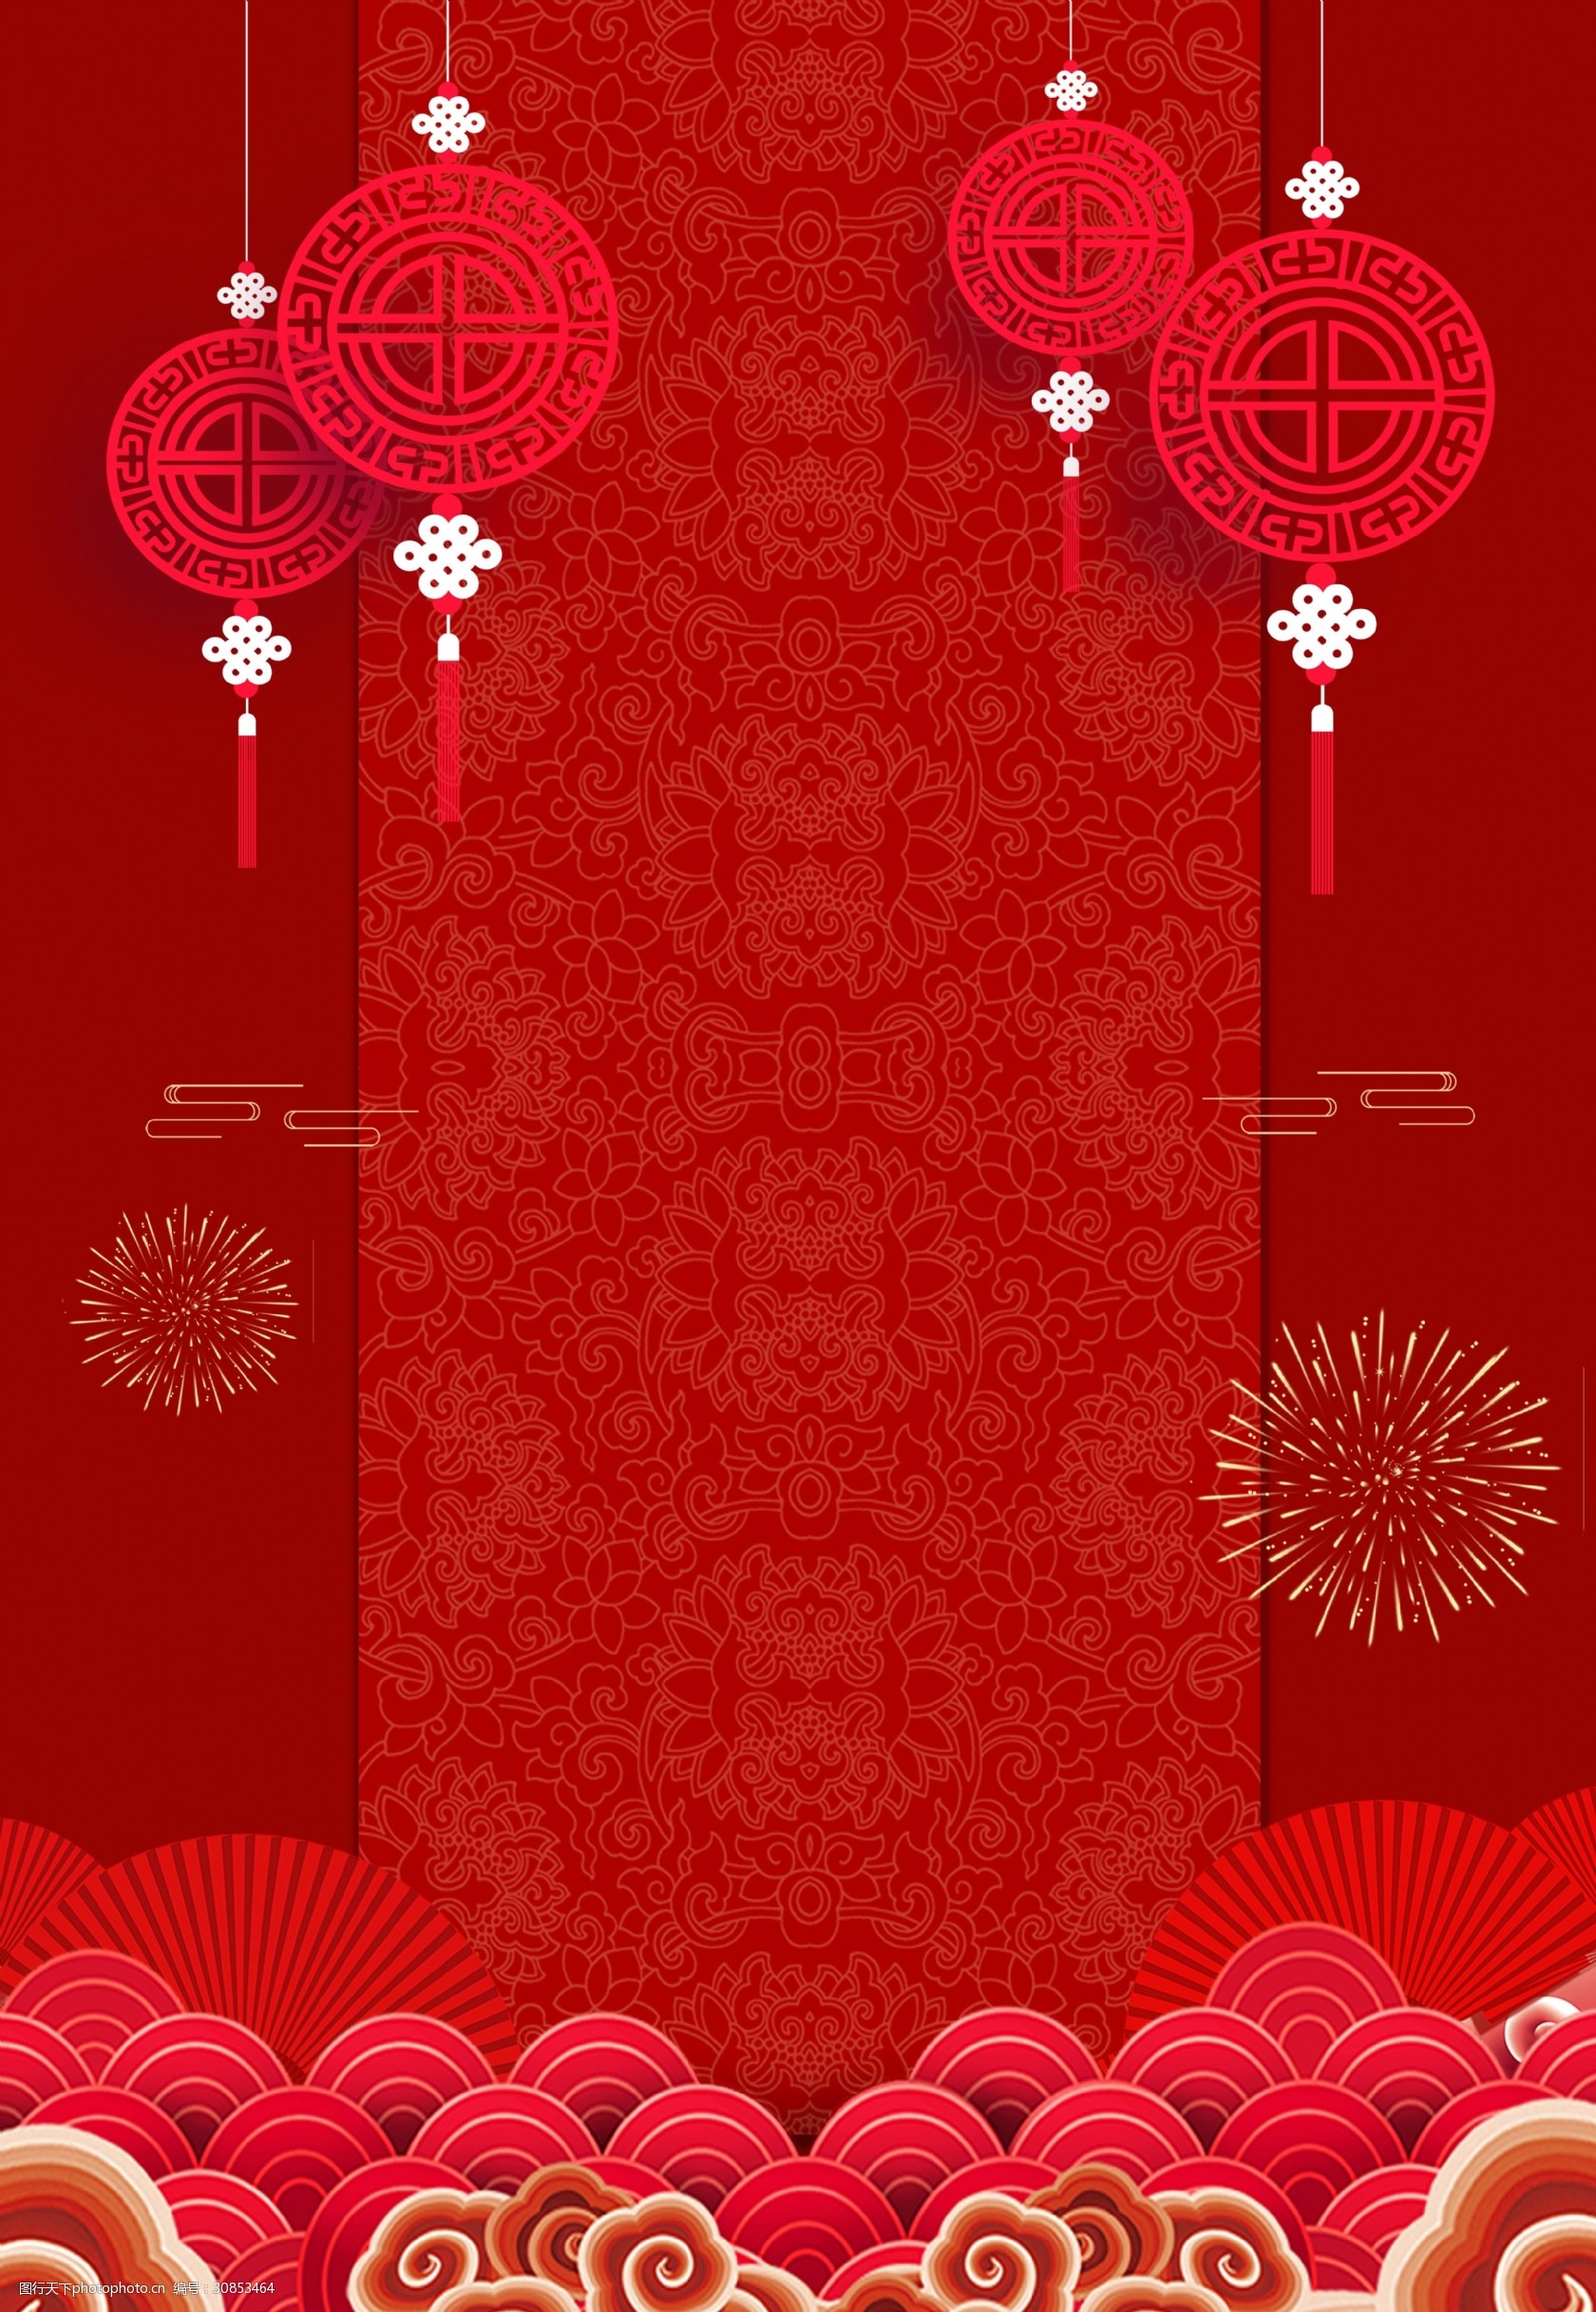 中国风红色灯笼烟花背景素材